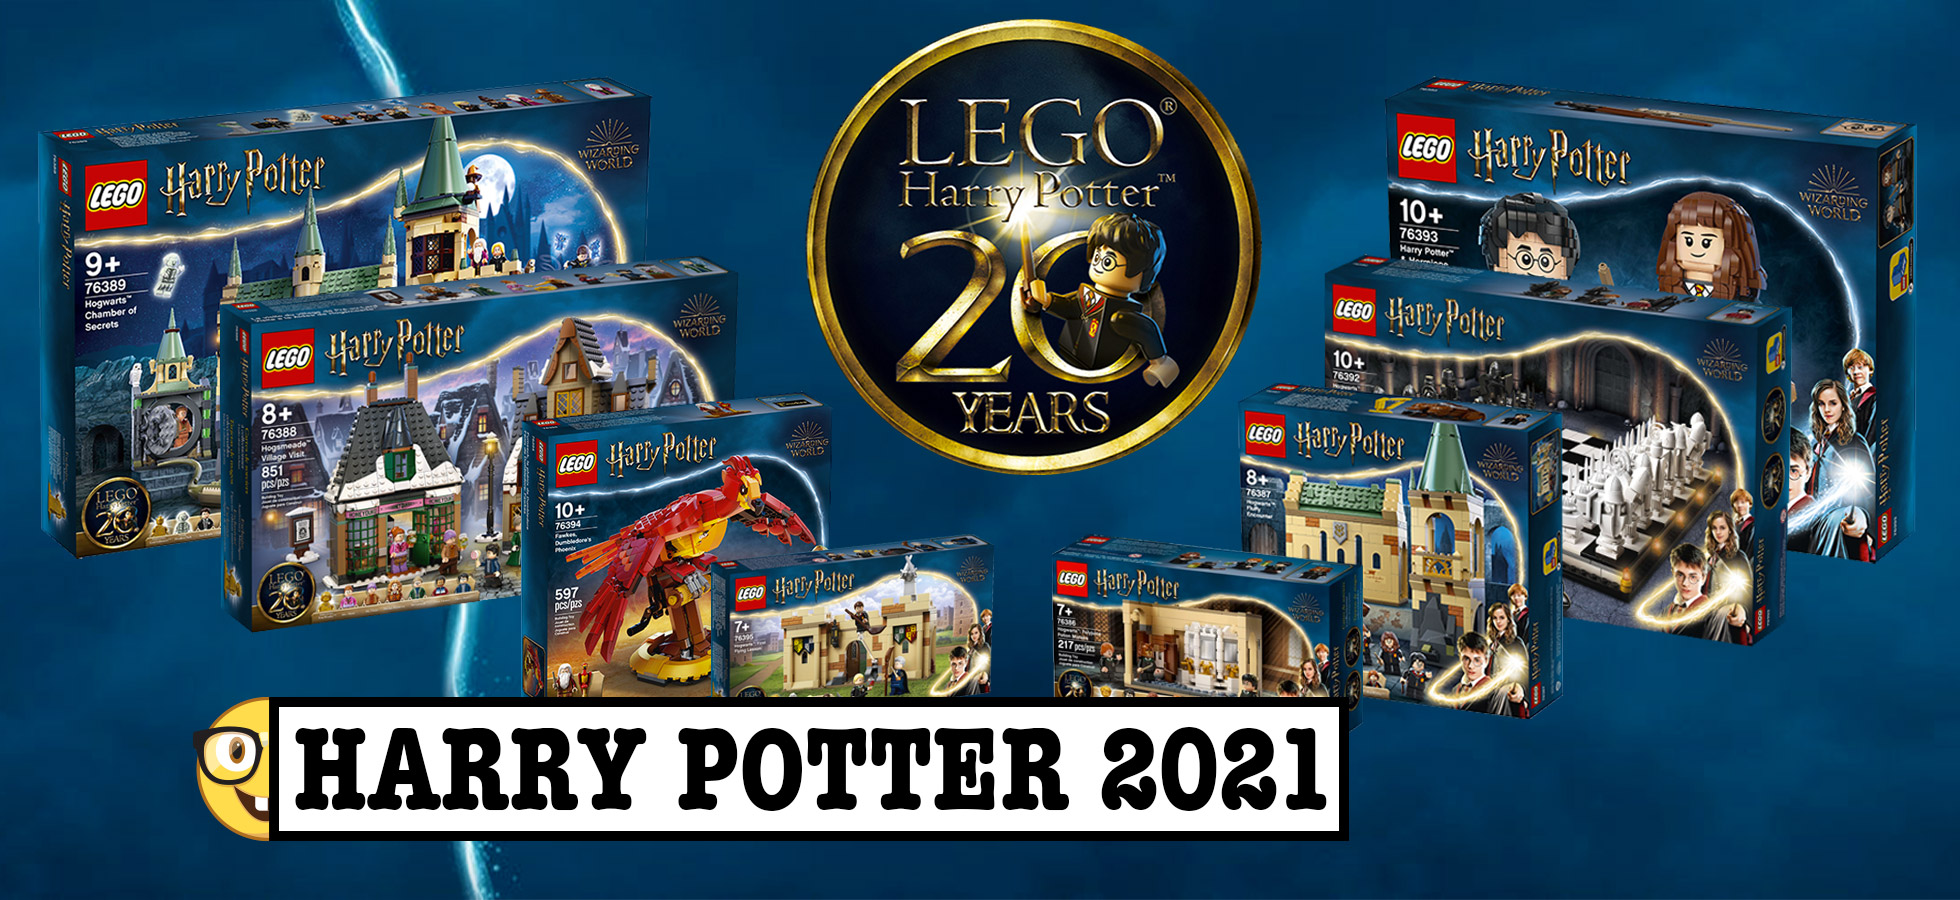 Scacchiera Harry Potter Set di scacchi di Harry Potter e la pietra  filosofale - La Cornice articoli da regalo